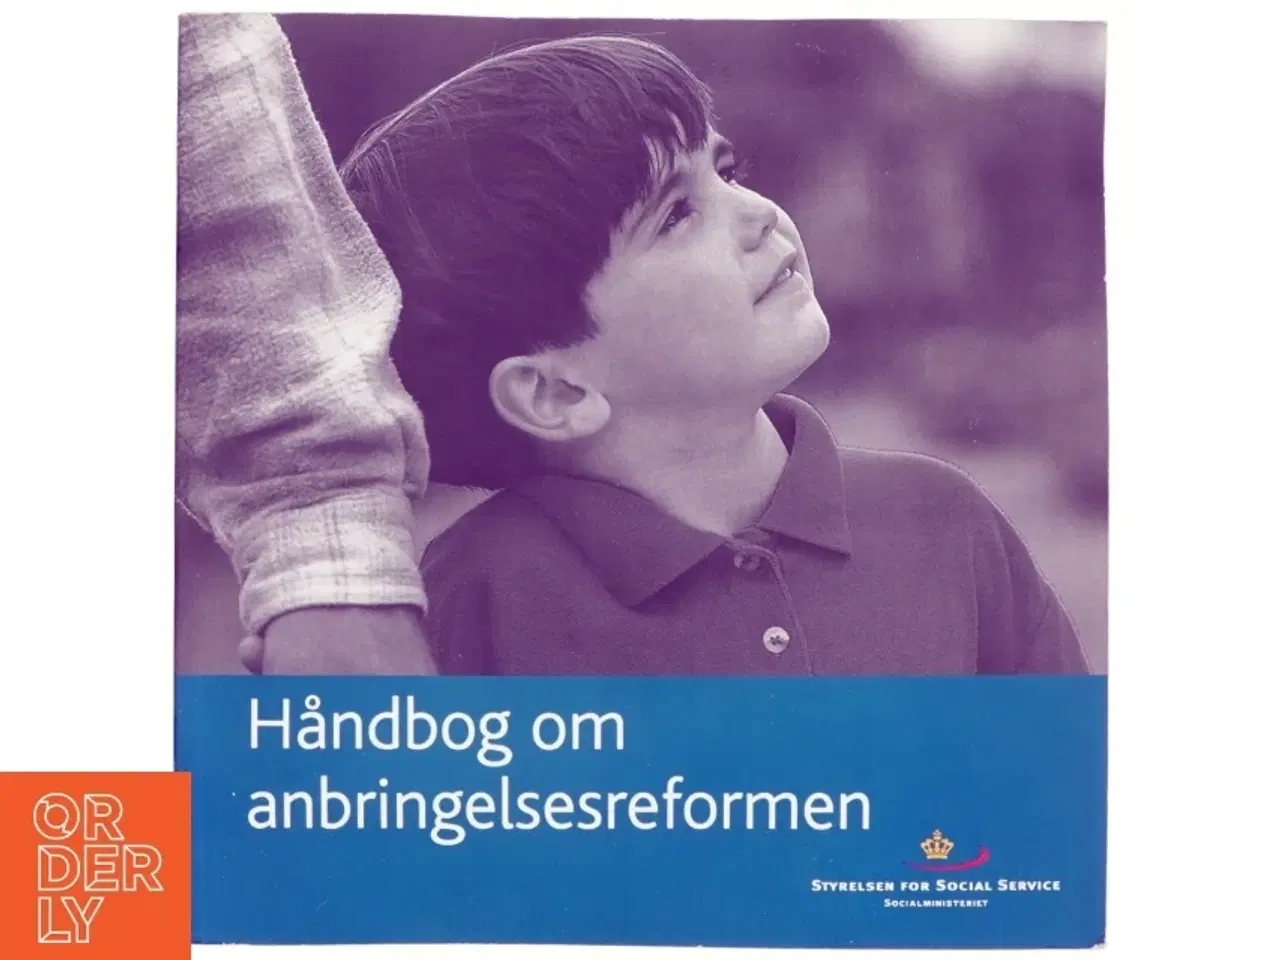 Billede 1 - Håndbog om anbringelsesreformen af Sociale Højskole (København), Danmark. Styrelsen for Social Service (Bog)